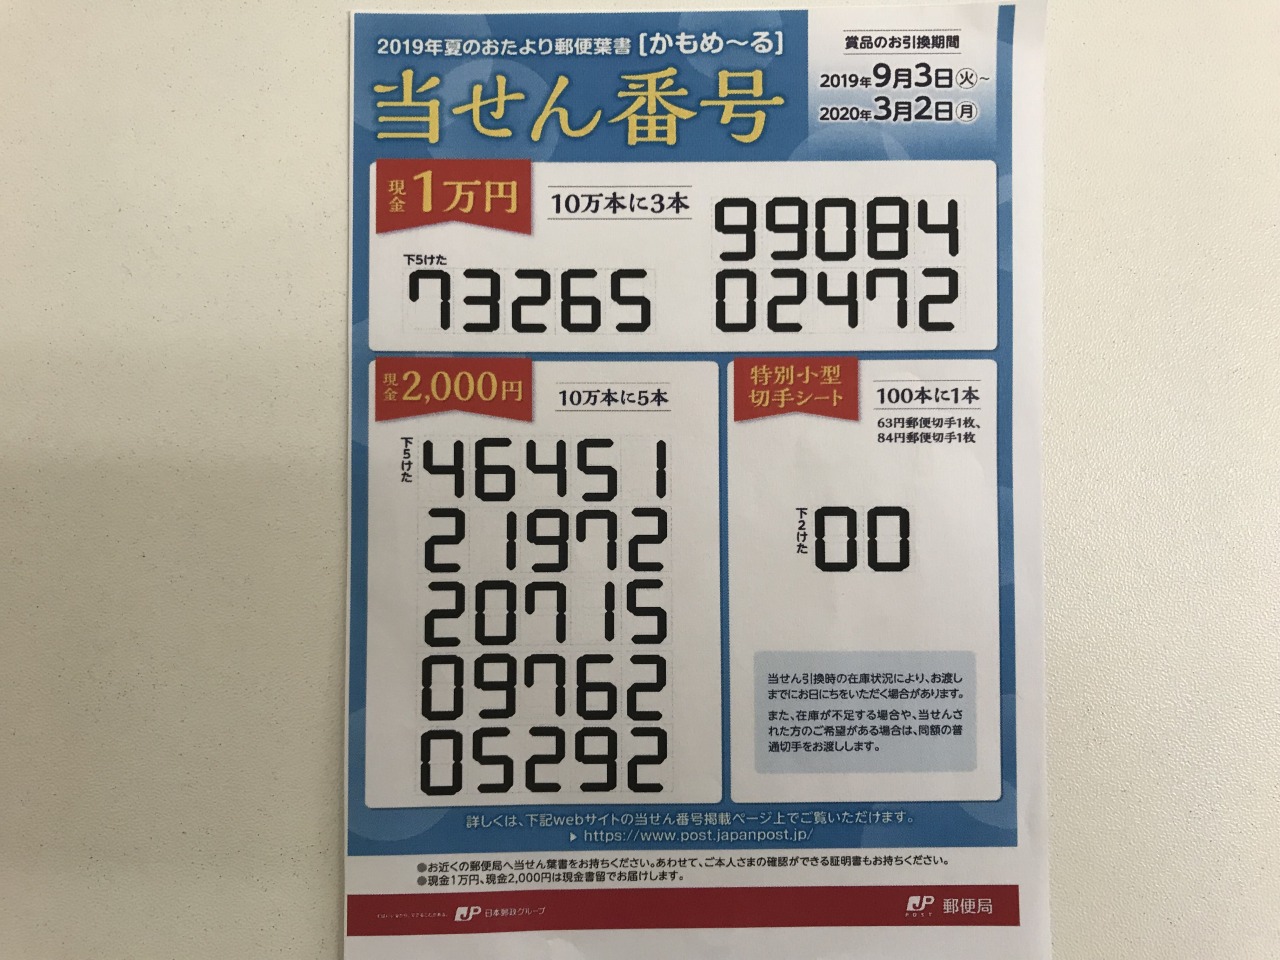 かも めーる 当選 番号 2020 日本 郵便